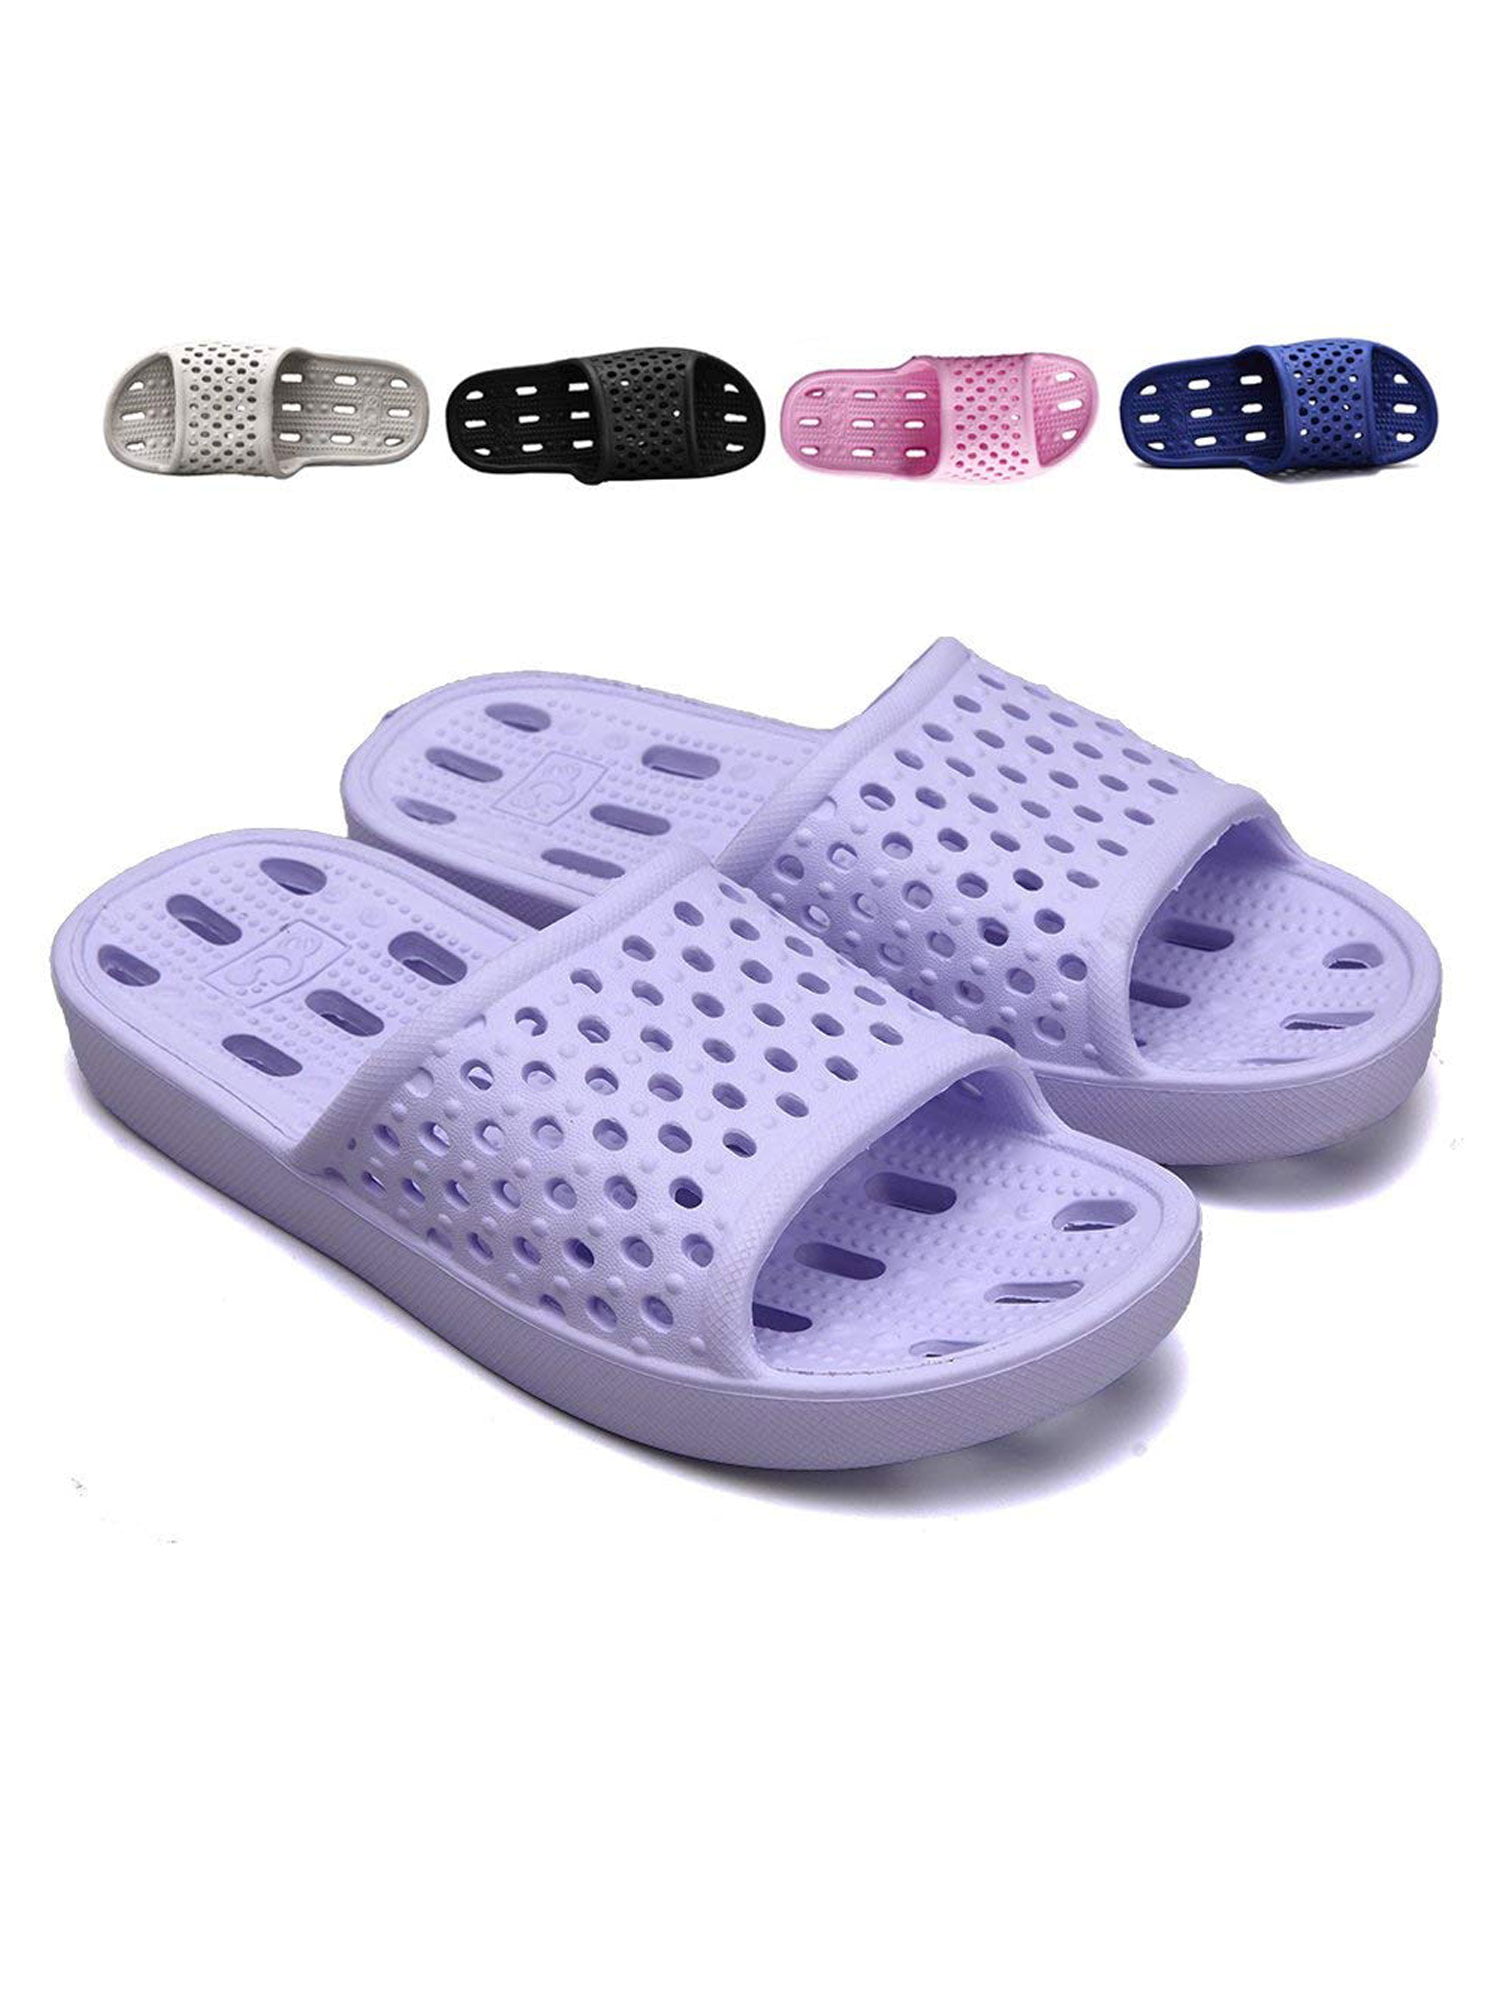 OwnShoe - Shower Shoes for Men and Women Bathroom Slippers Non Slip ...